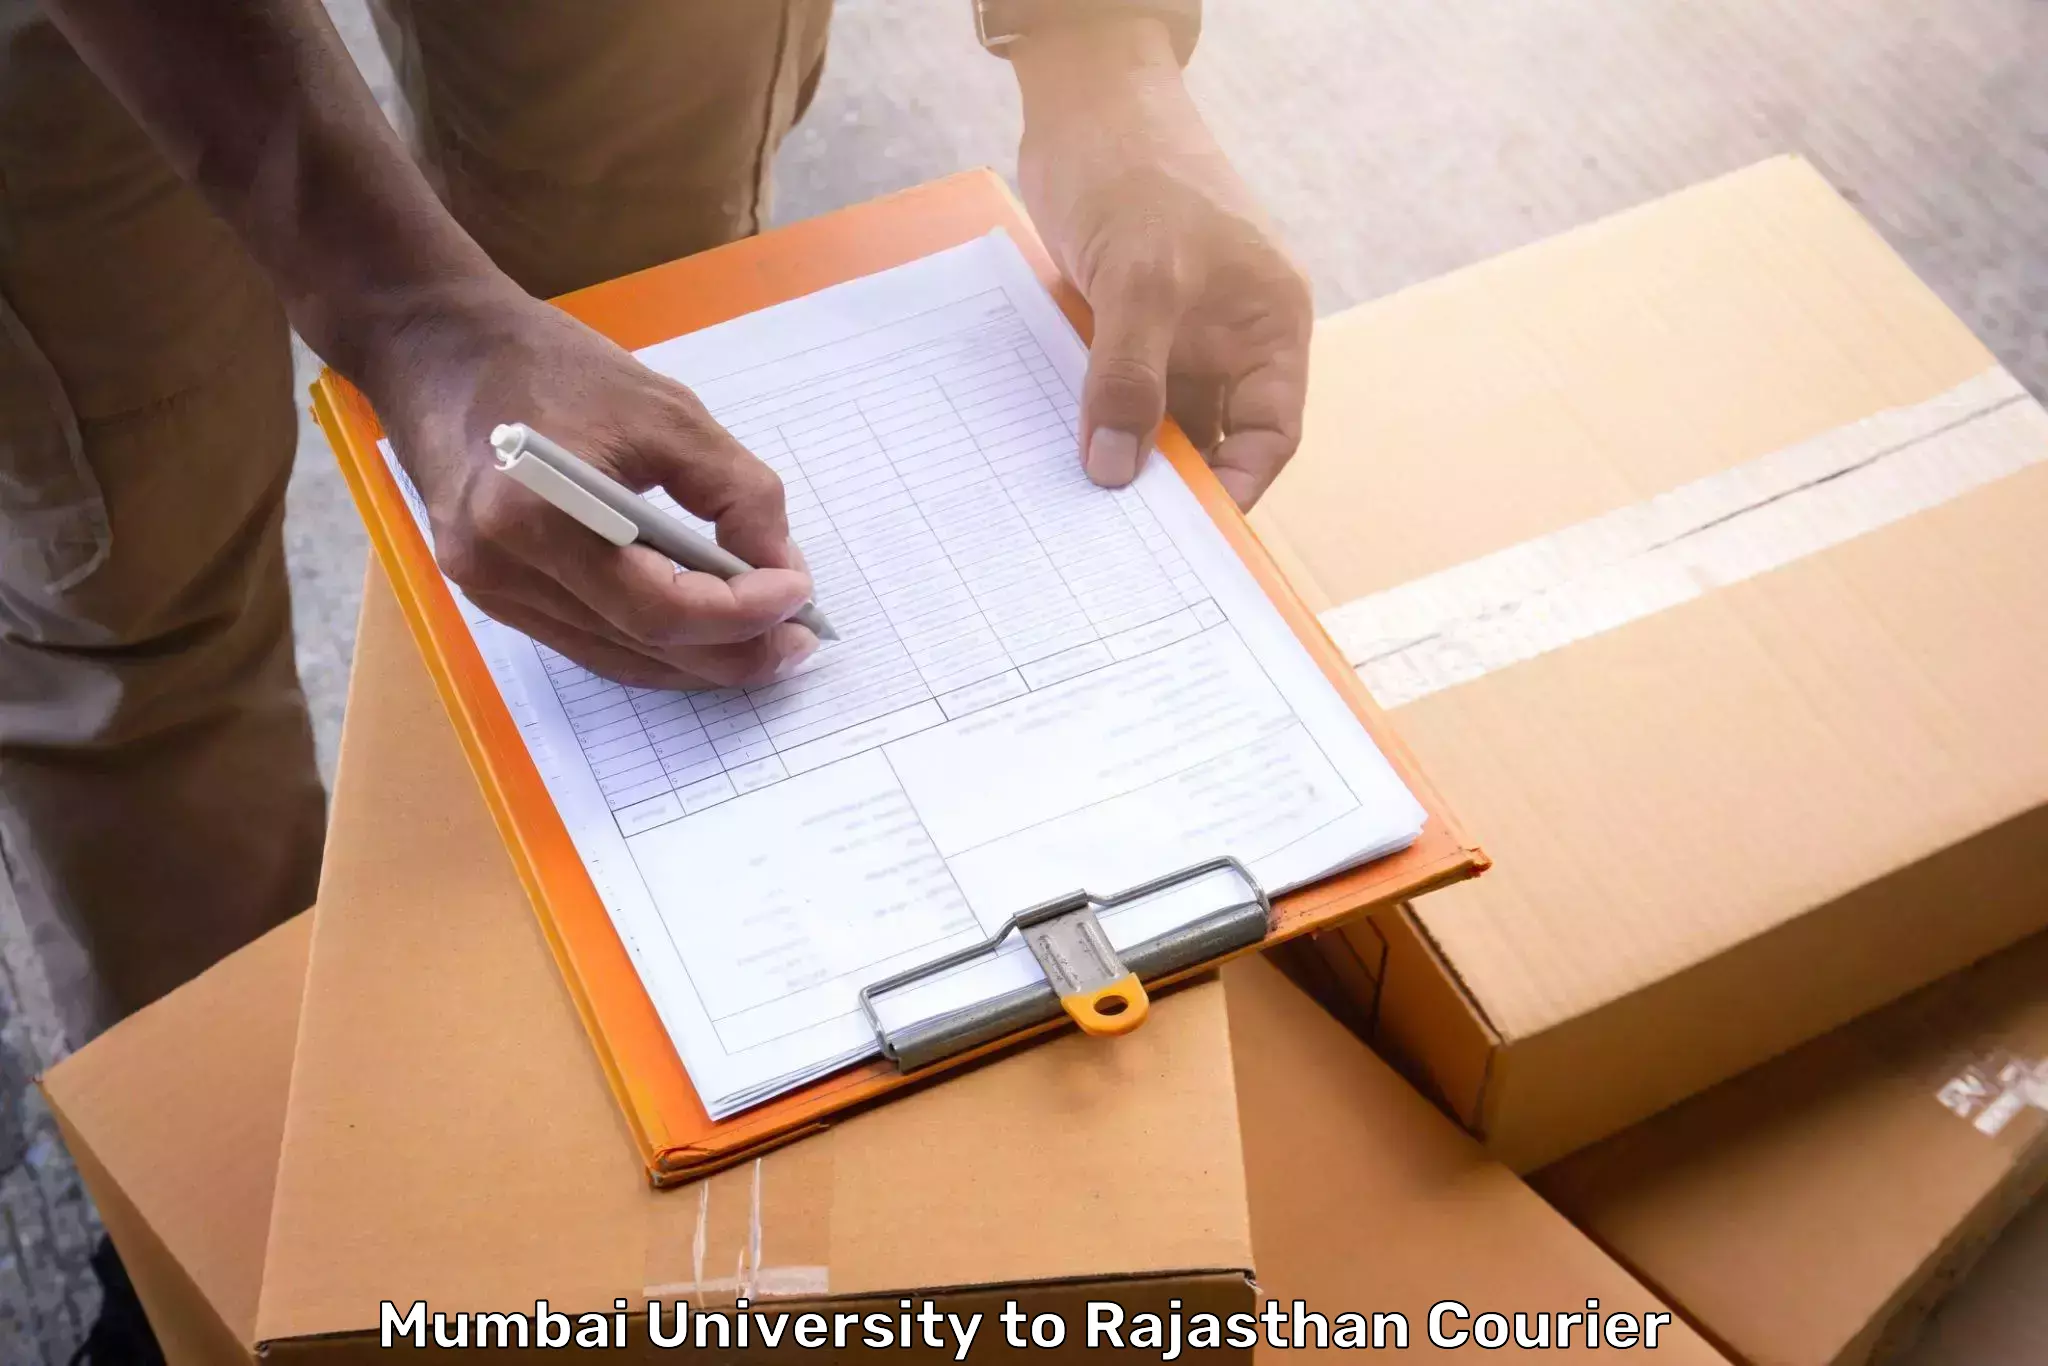 Luggage shipment specialists Mumbai University to Kekri